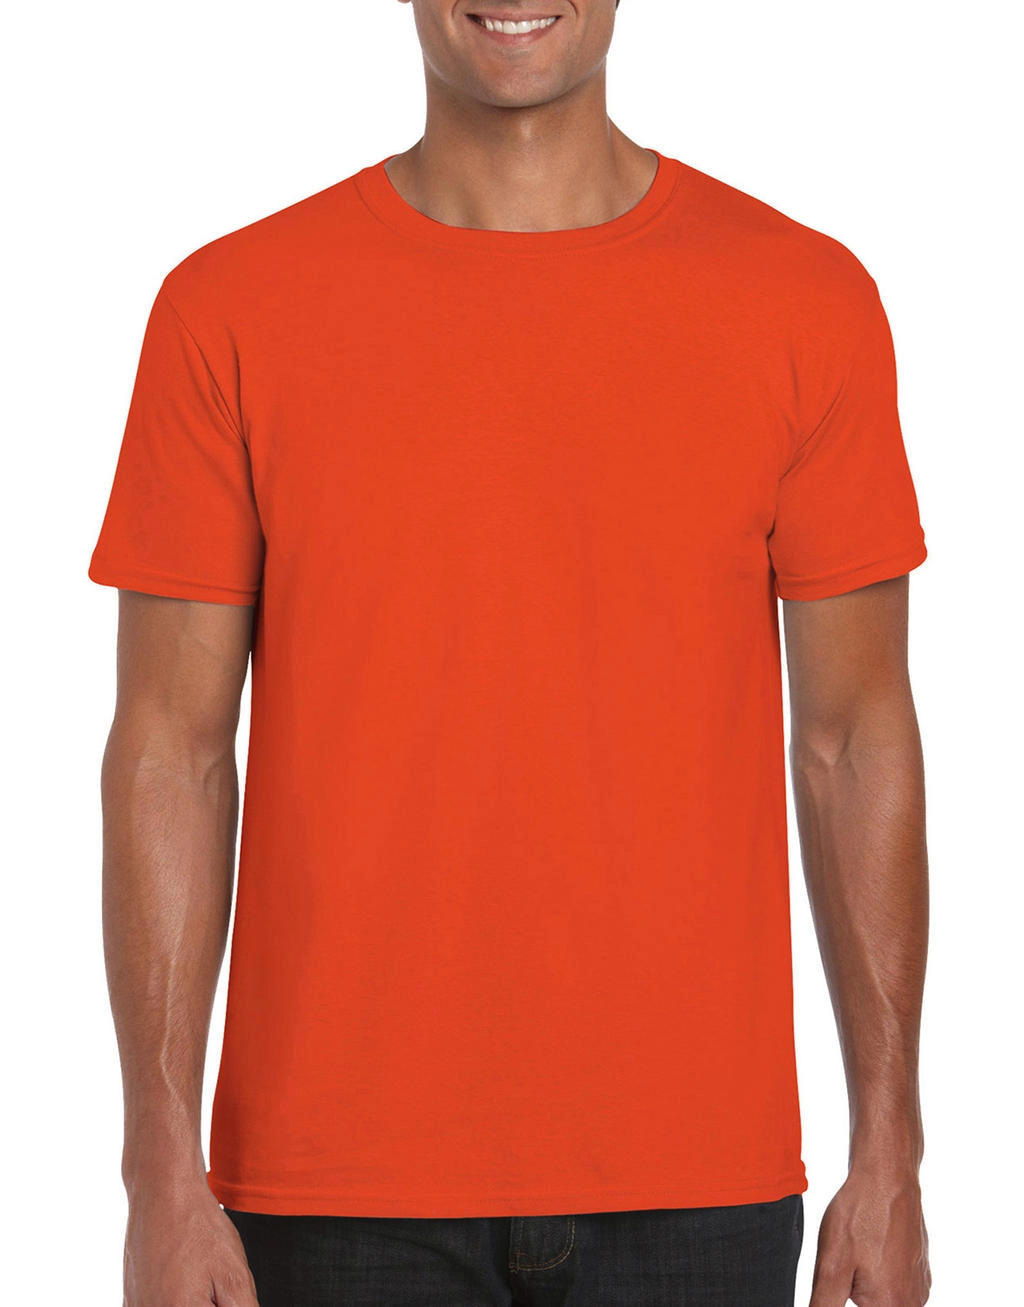 Softstyle® Ring Spun T-Shirt zum Besticken und Bedrucken in der Farbe Orange mit Ihren Logo, Schriftzug oder Motiv.